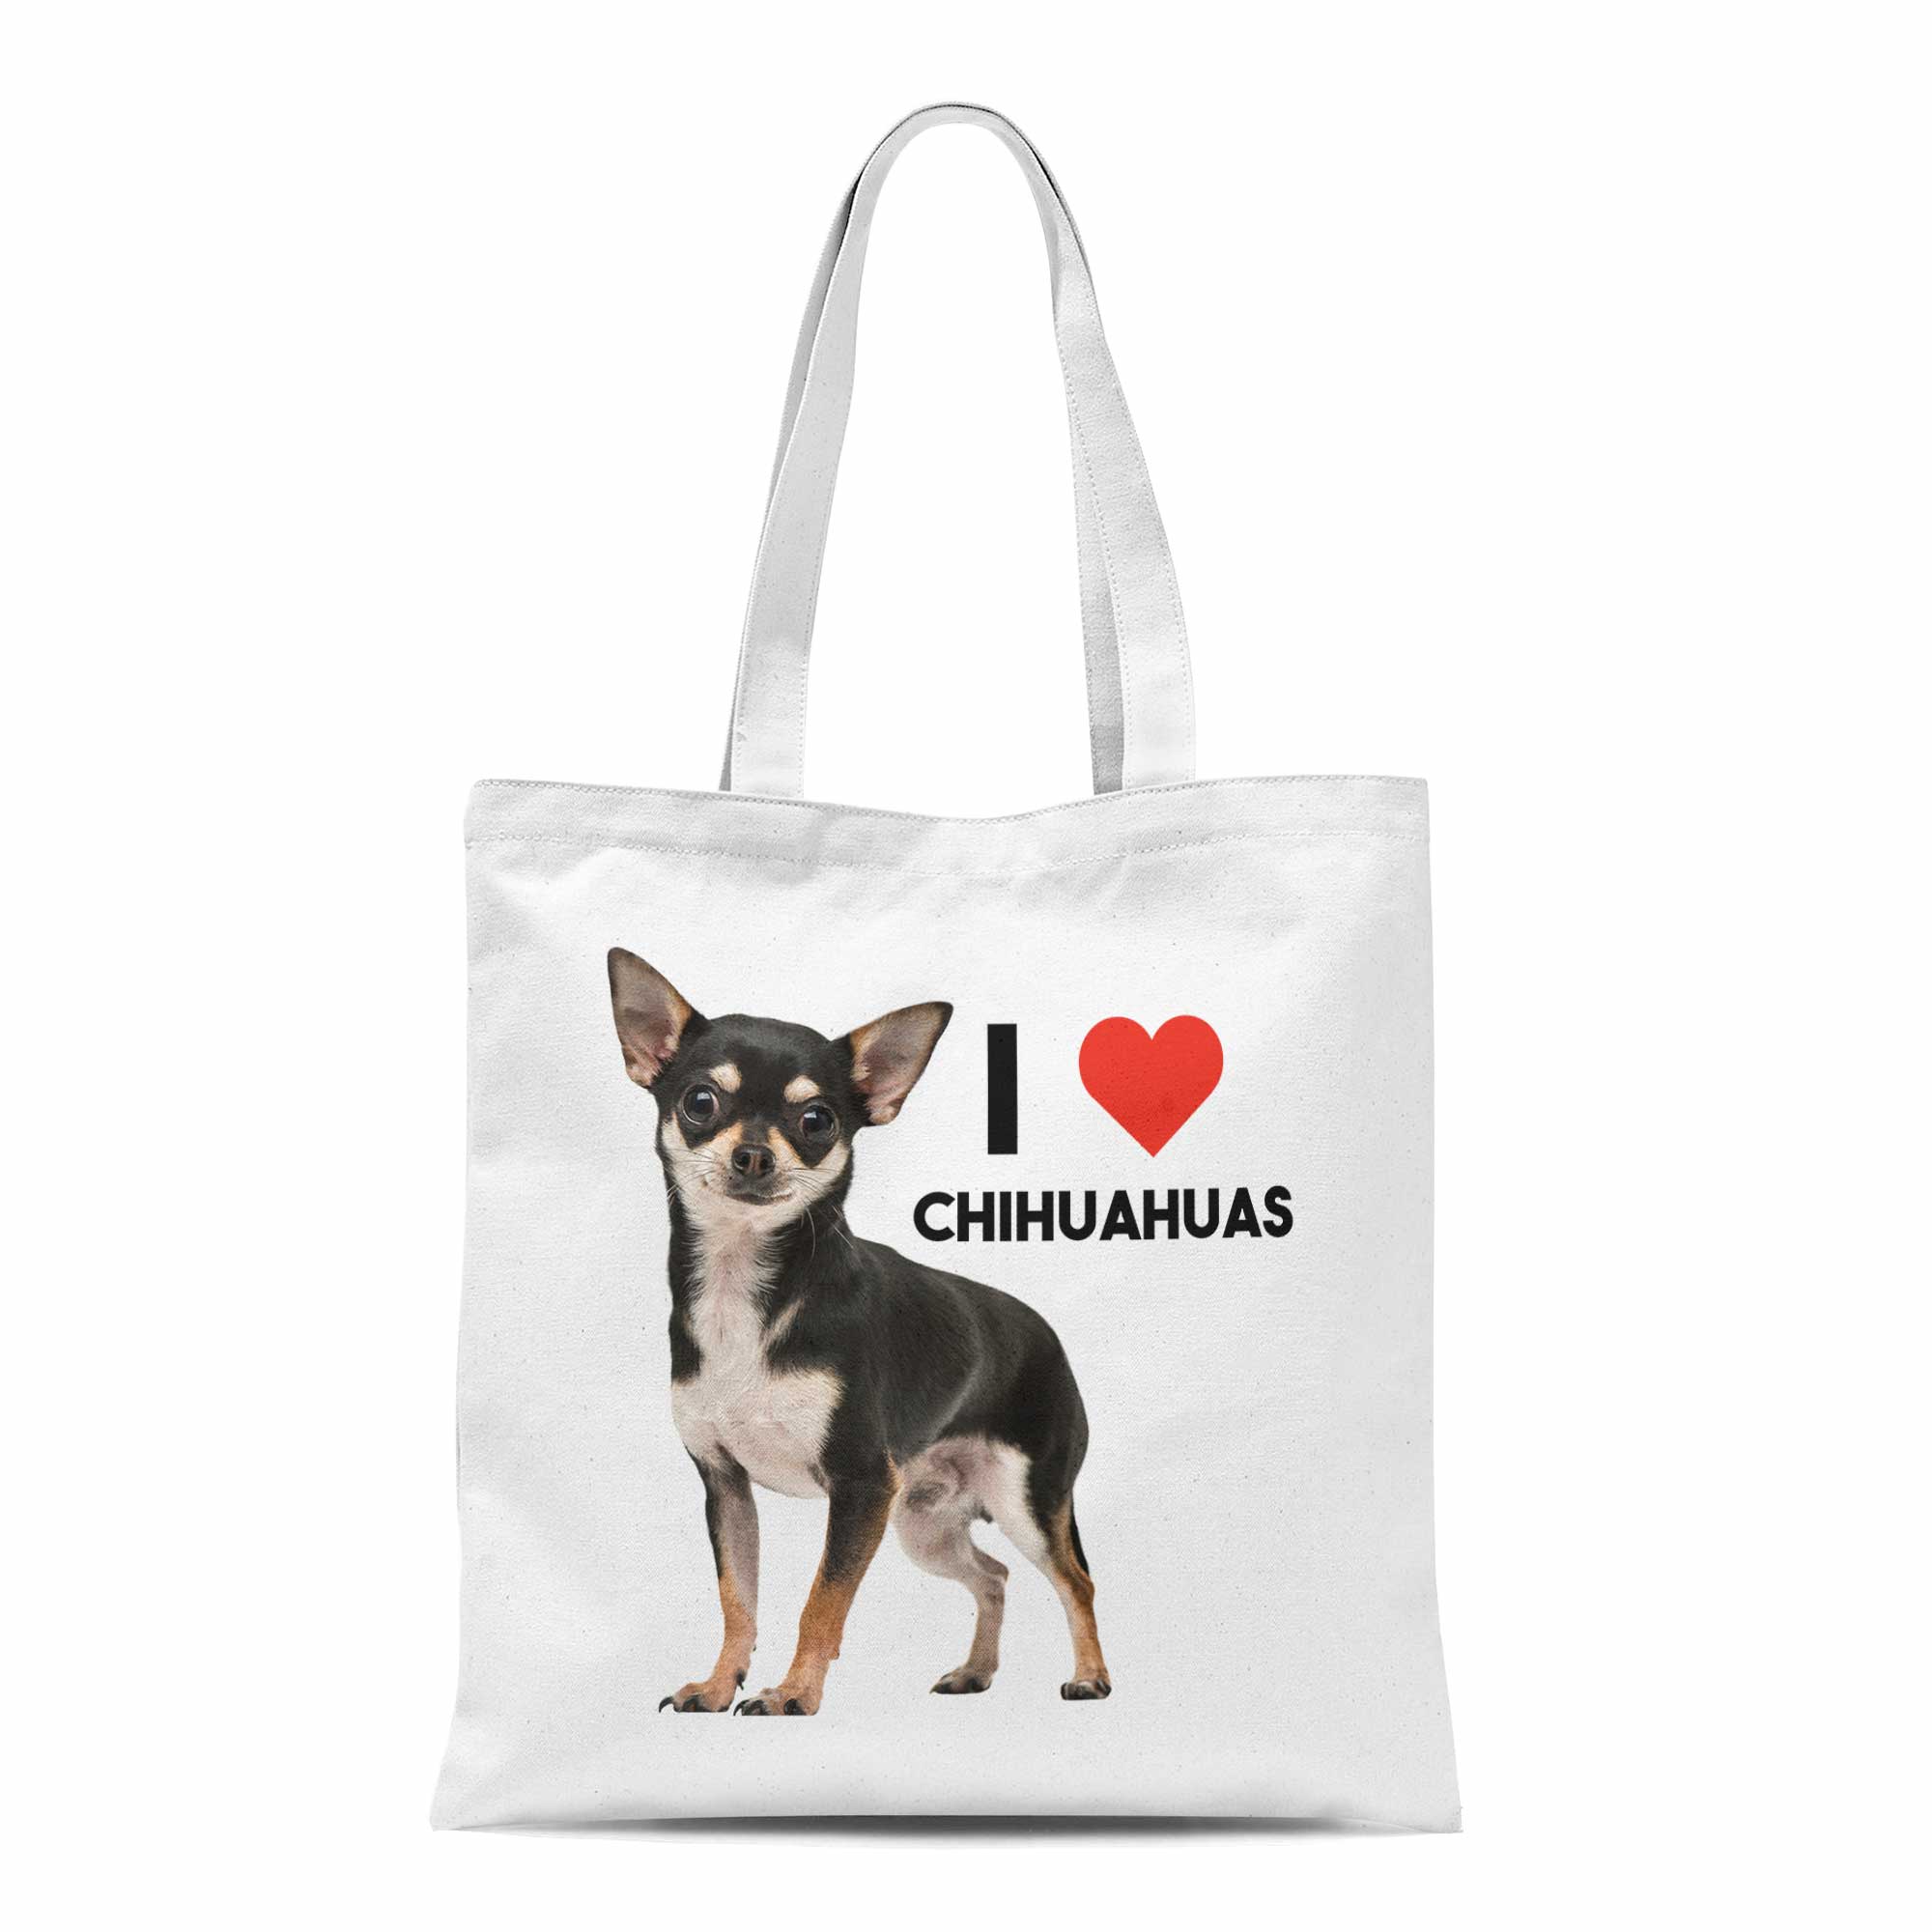 I Heart Chihuahuas Tote Bag